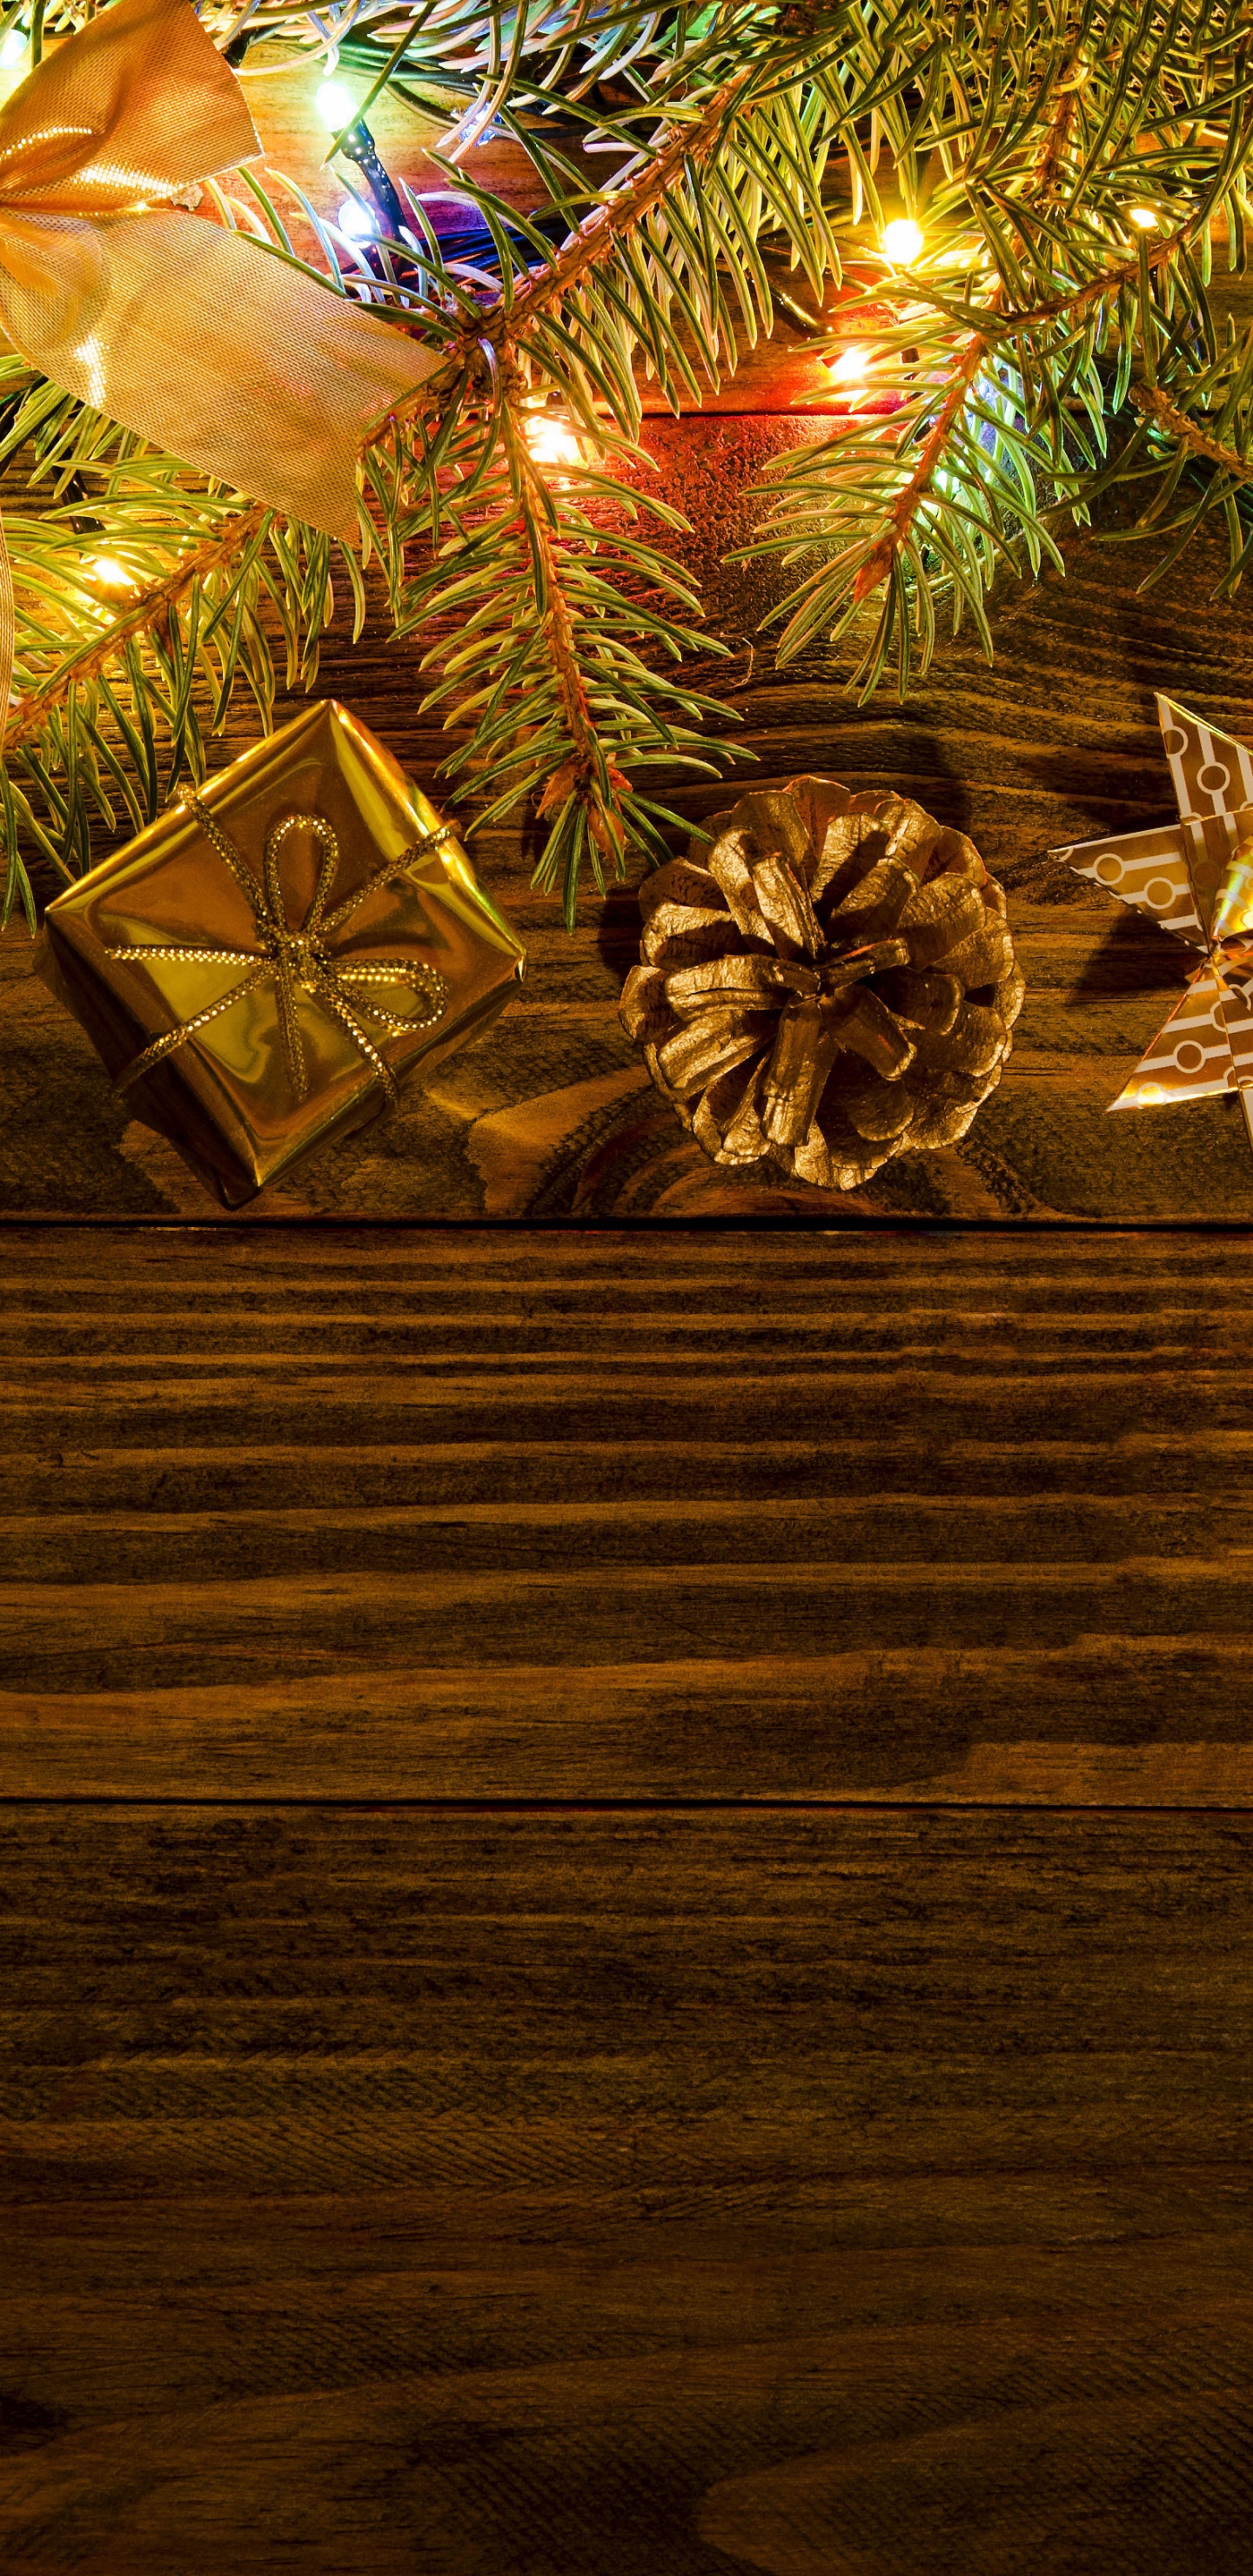 Neujahr, Weihnachten, Baum, Weihnachtsdekoration, Weihnachtsbeleuchtung. Wallpaper in 1440x2960 Resolution